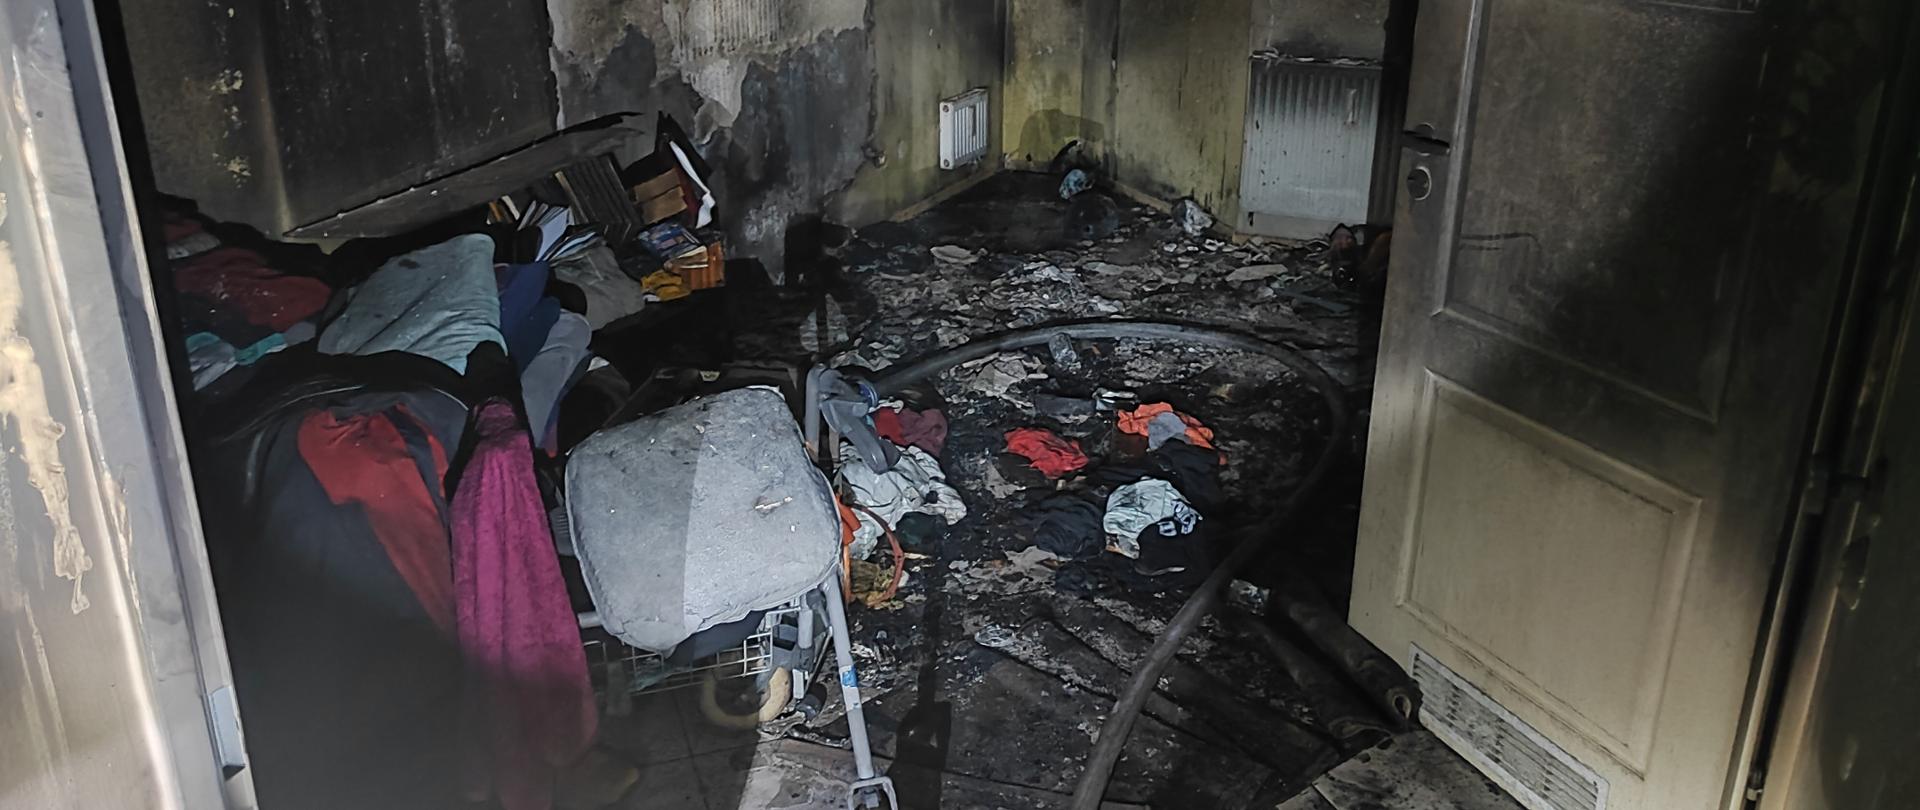 Pomieszczenie, z którego ewakuowano osobe poszkodowaną oraz nadpalone elementy wyposażenia mieszkania